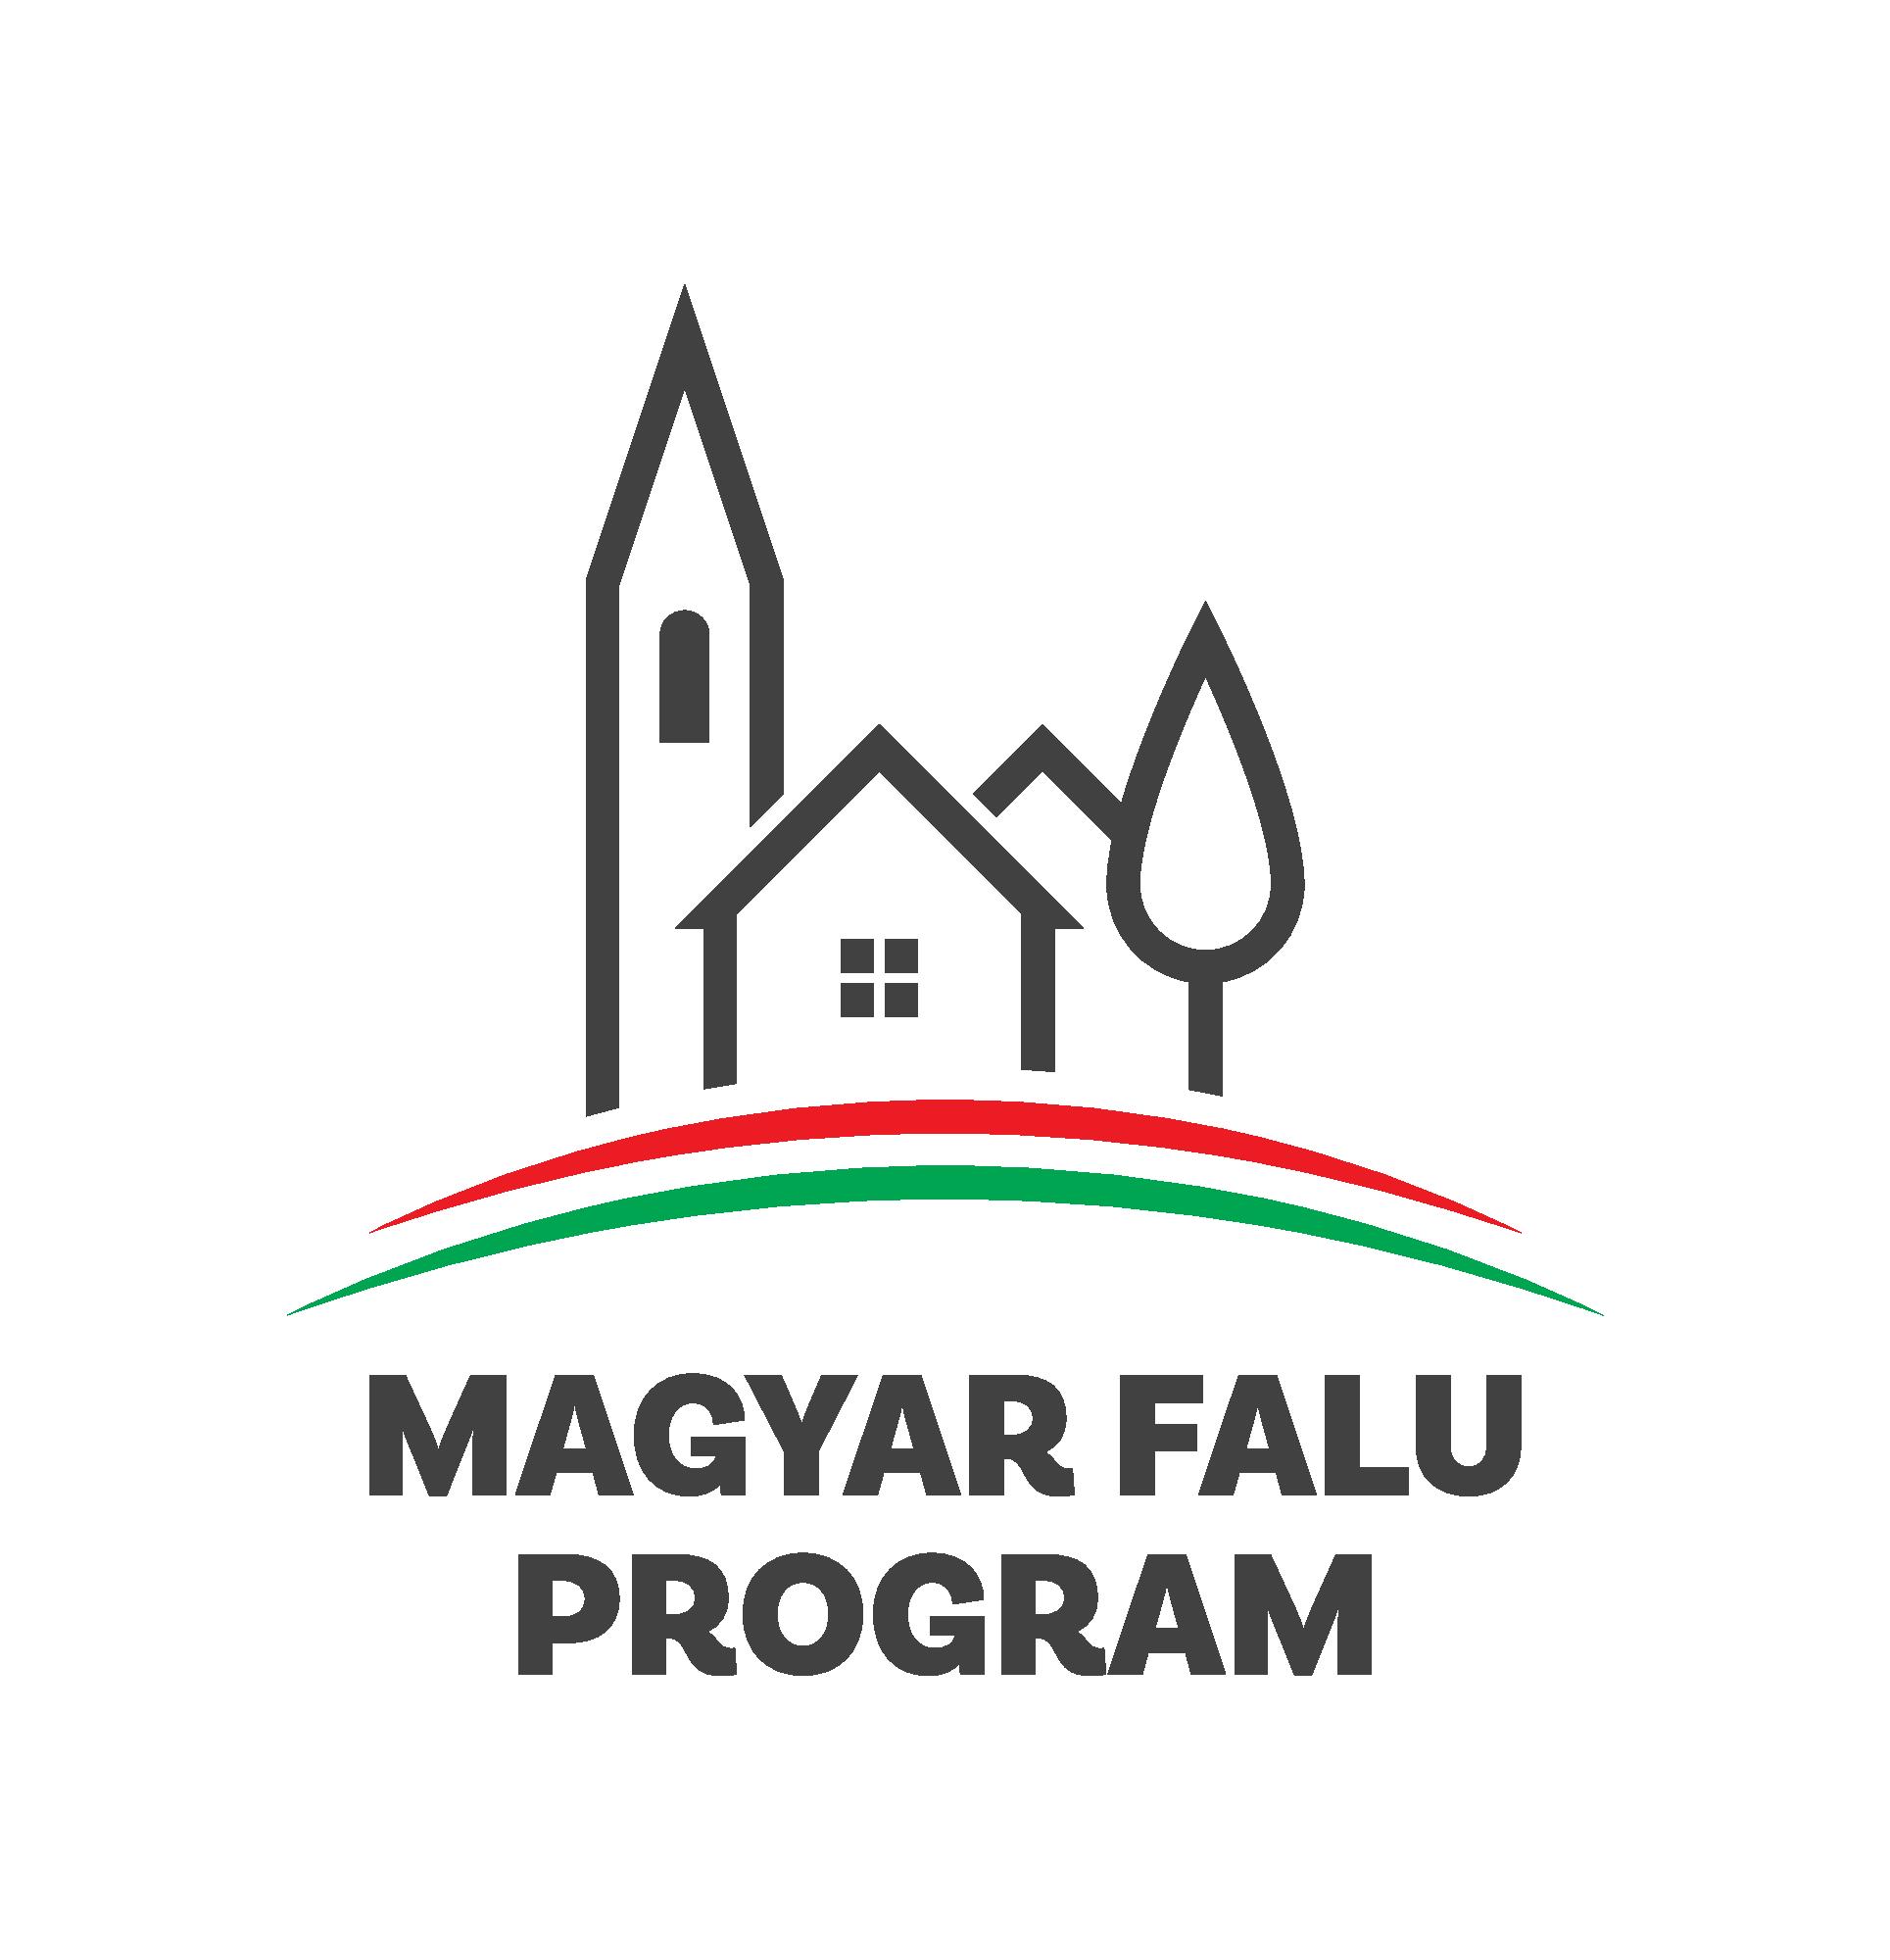 A Magyar Falu Program Keretén belül meghirdetett,Közösségszervezéshez kapcsolódő eszközbeszerzés és közösségszervező bértámogatása-2021,MFP-KEB/2021 kódszámú projekt megvalósítására Szécsényfelfalu Község Önkormányzata 3035340 forint vissza nem térítendő támogatást nyert.